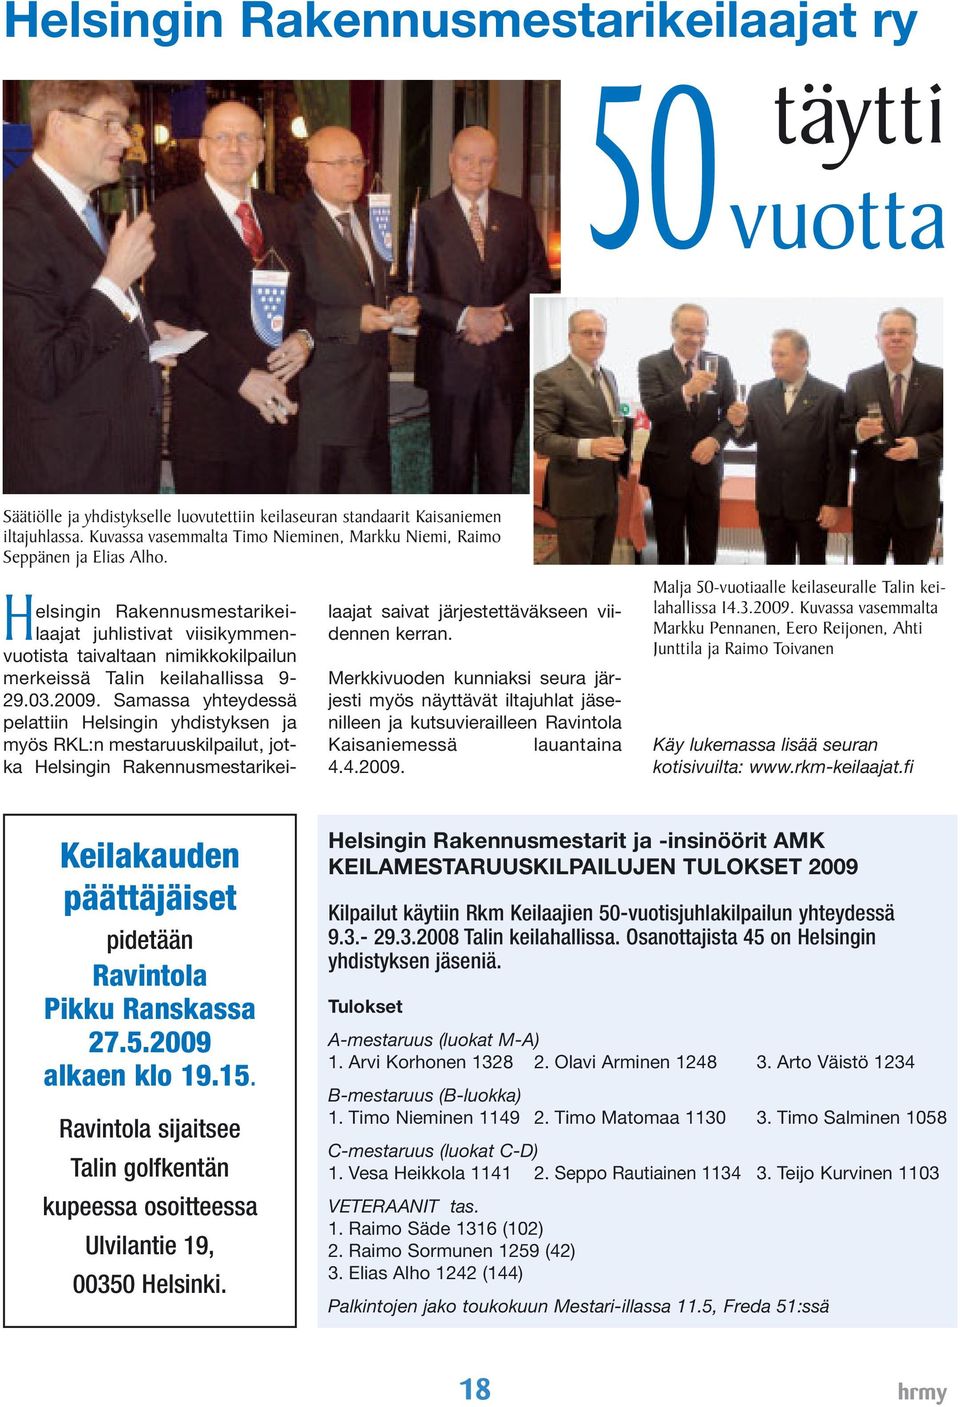 Helsingin Rakennusmestarikeilaajat juhlistivat viisikymmenvuotista taivaltaan nimikkokilpailun merkeissä Talin keilahallissa 9-29.03.2009.